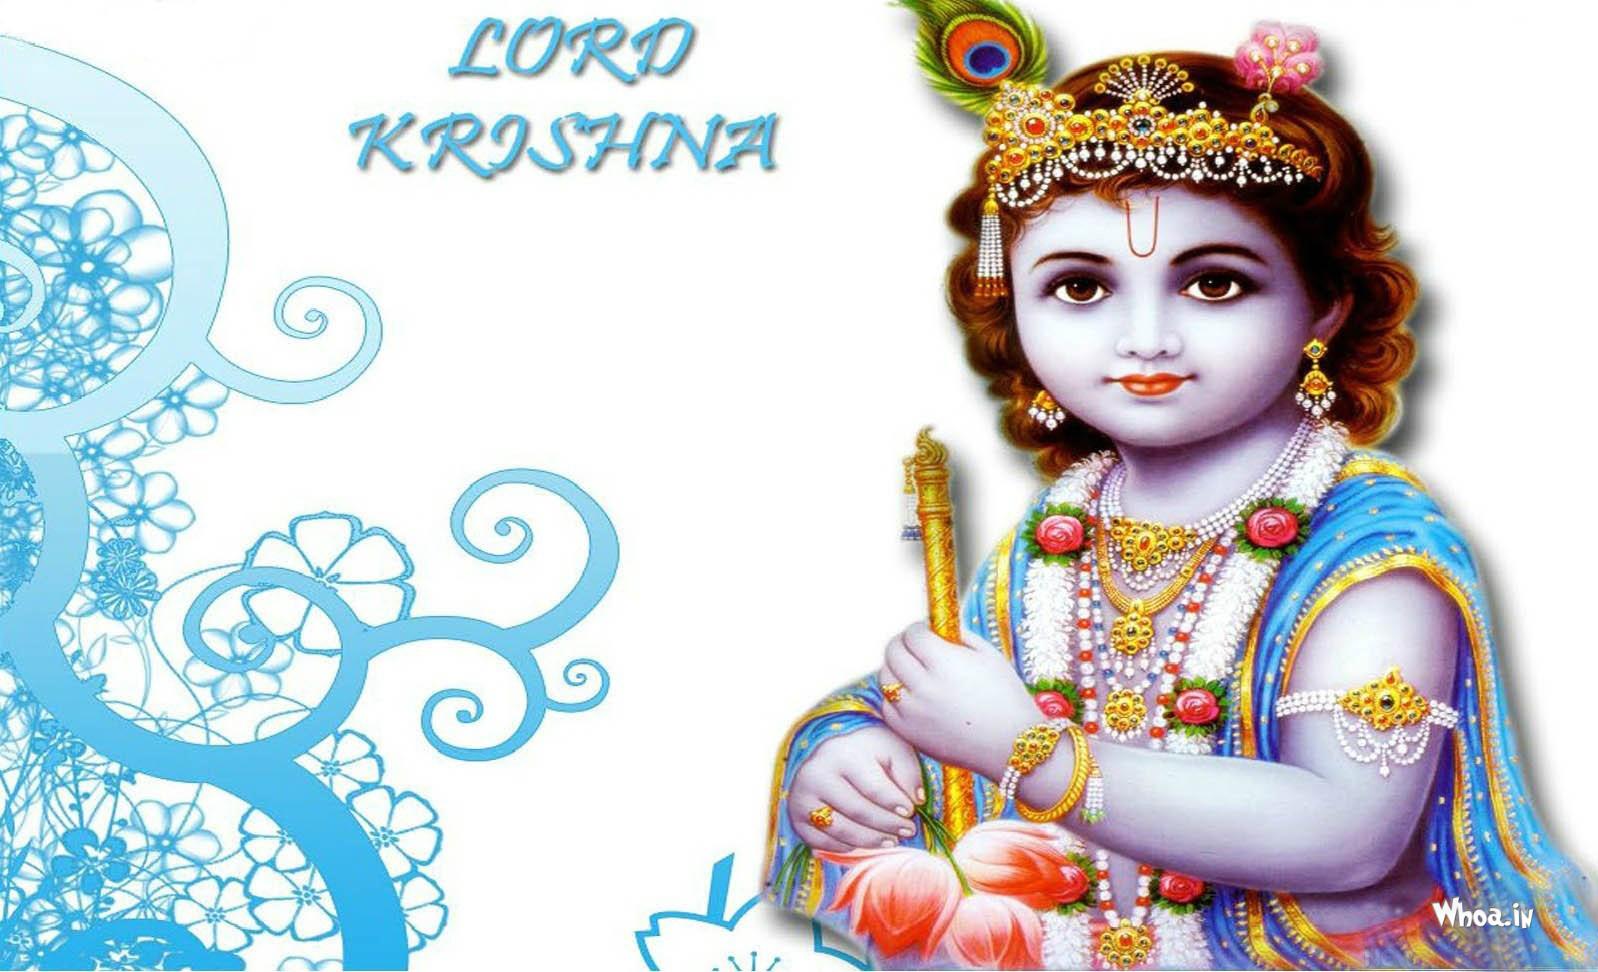 Lord Krishna White Color Hd Wallpaper